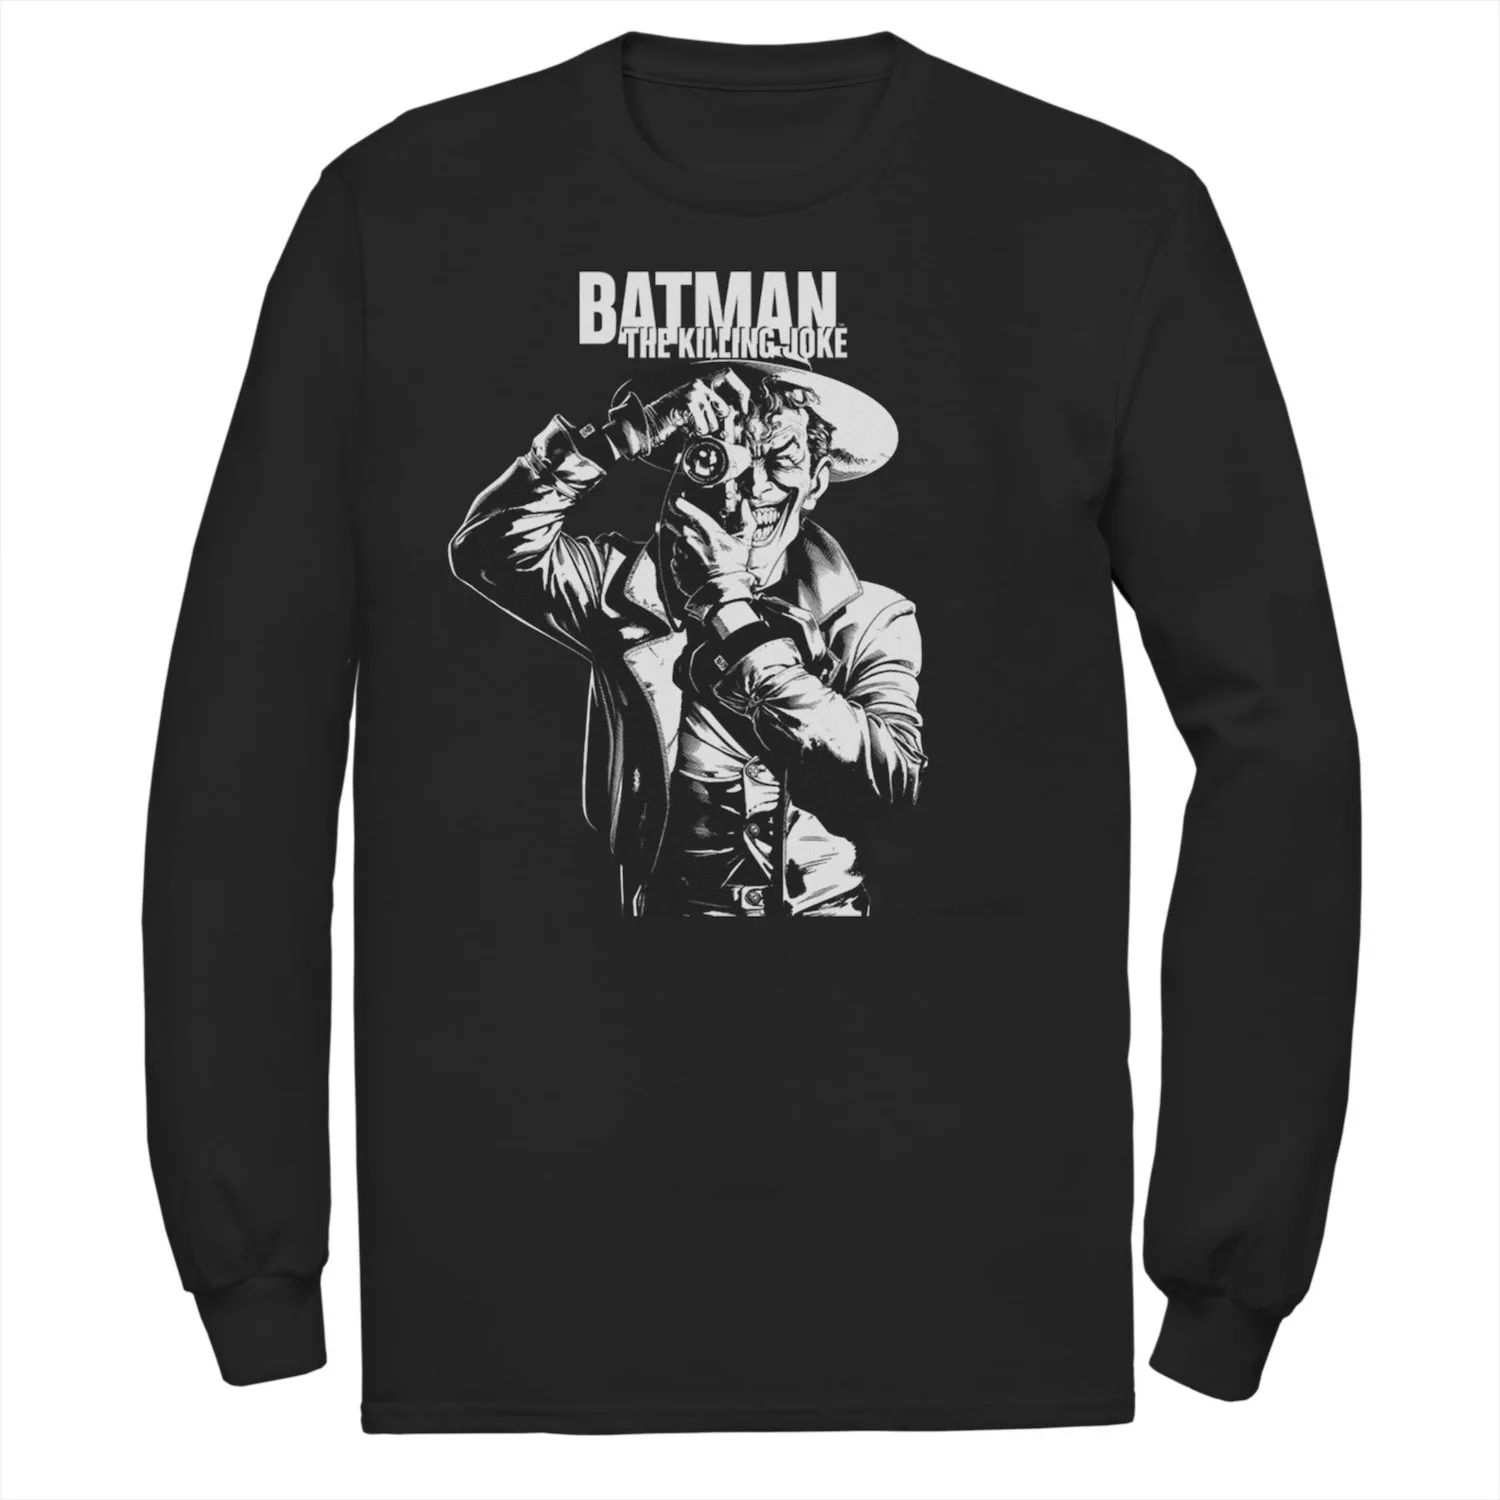 Мужская футболка DC Comics Batman The Killing Joke Tee блокнот batman the killing joke